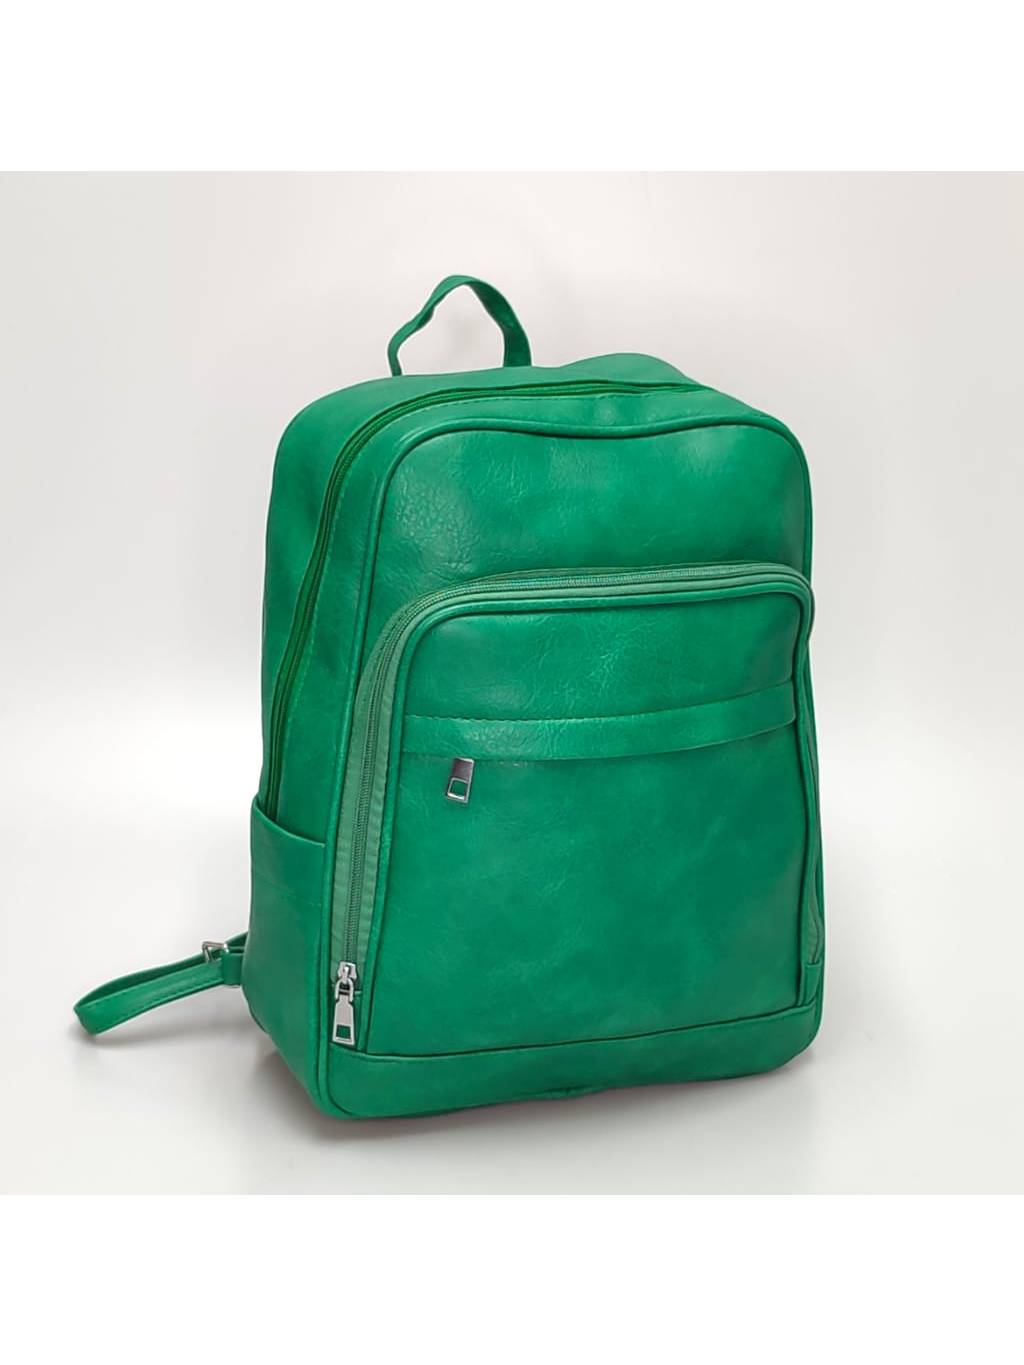 Dámsky ruksak 666L zelený www.kabelky vypredaj (1)